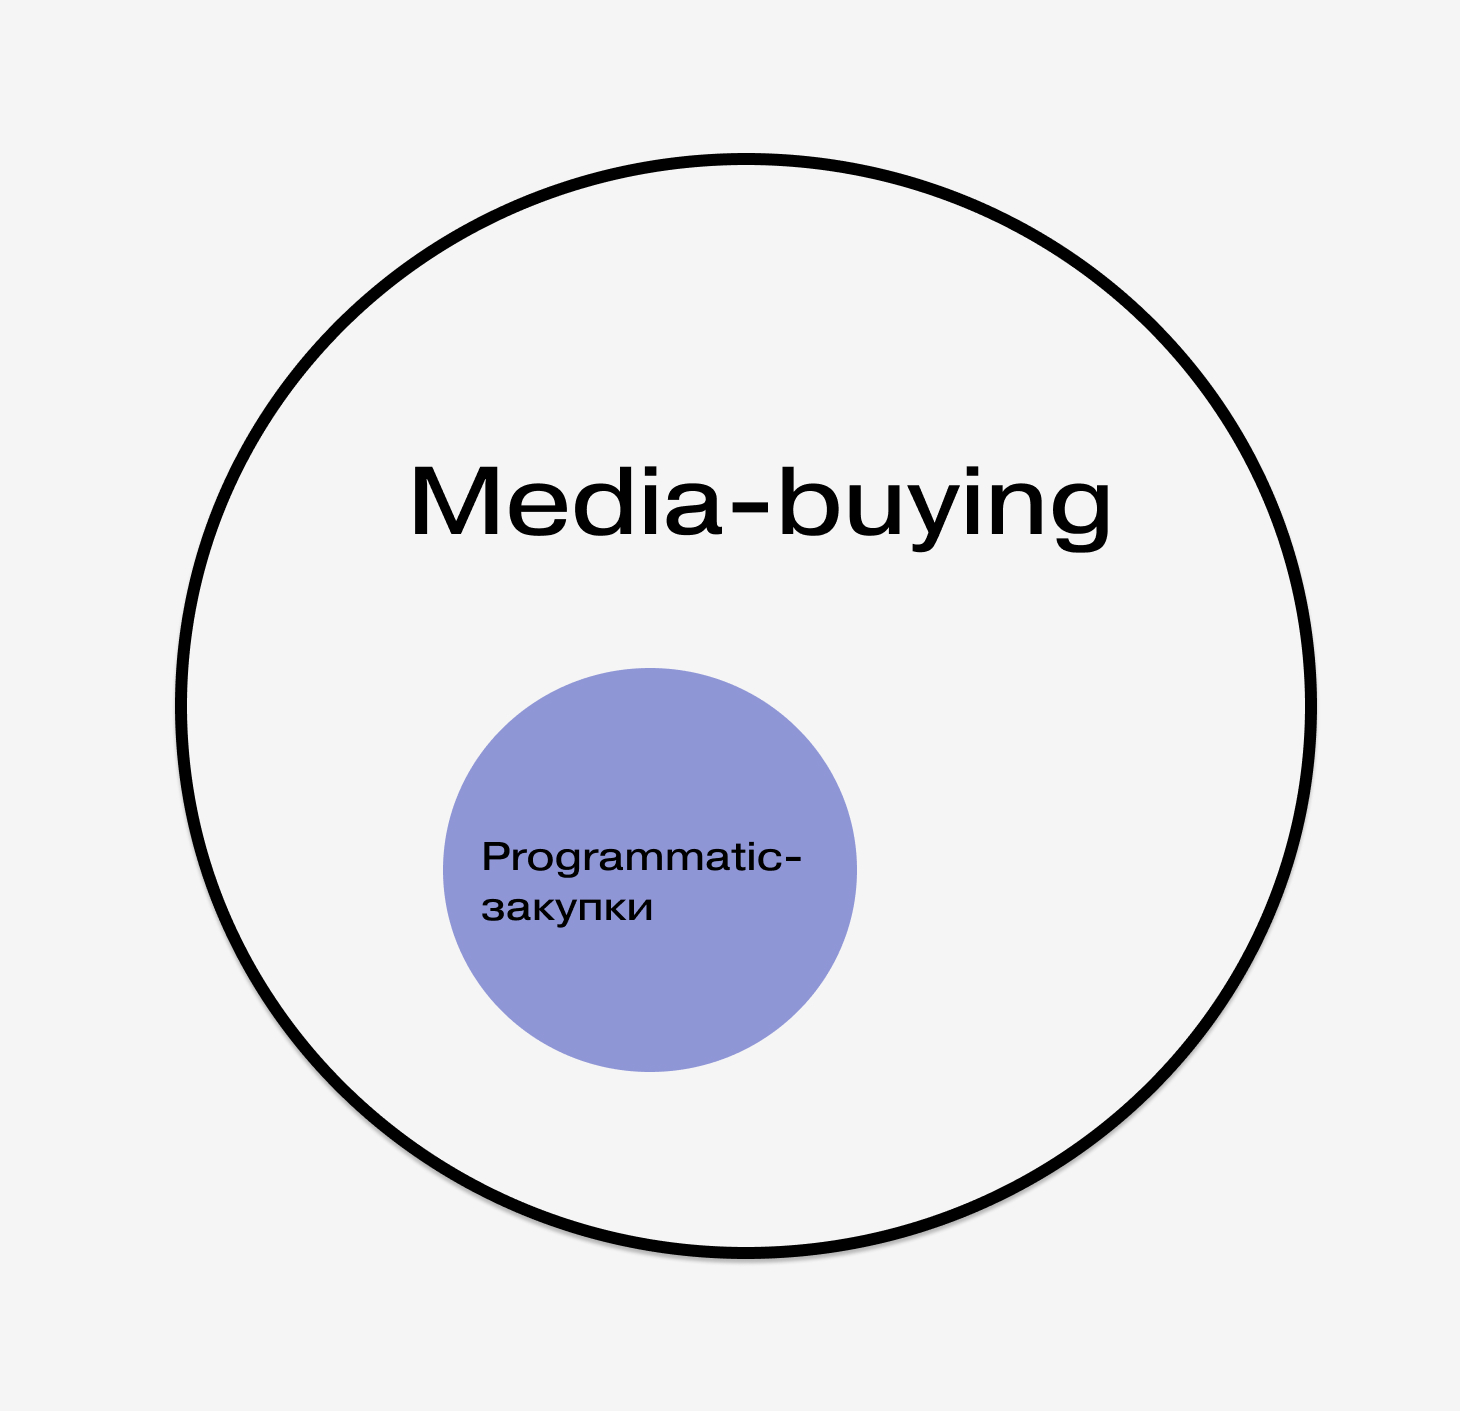 Media buying